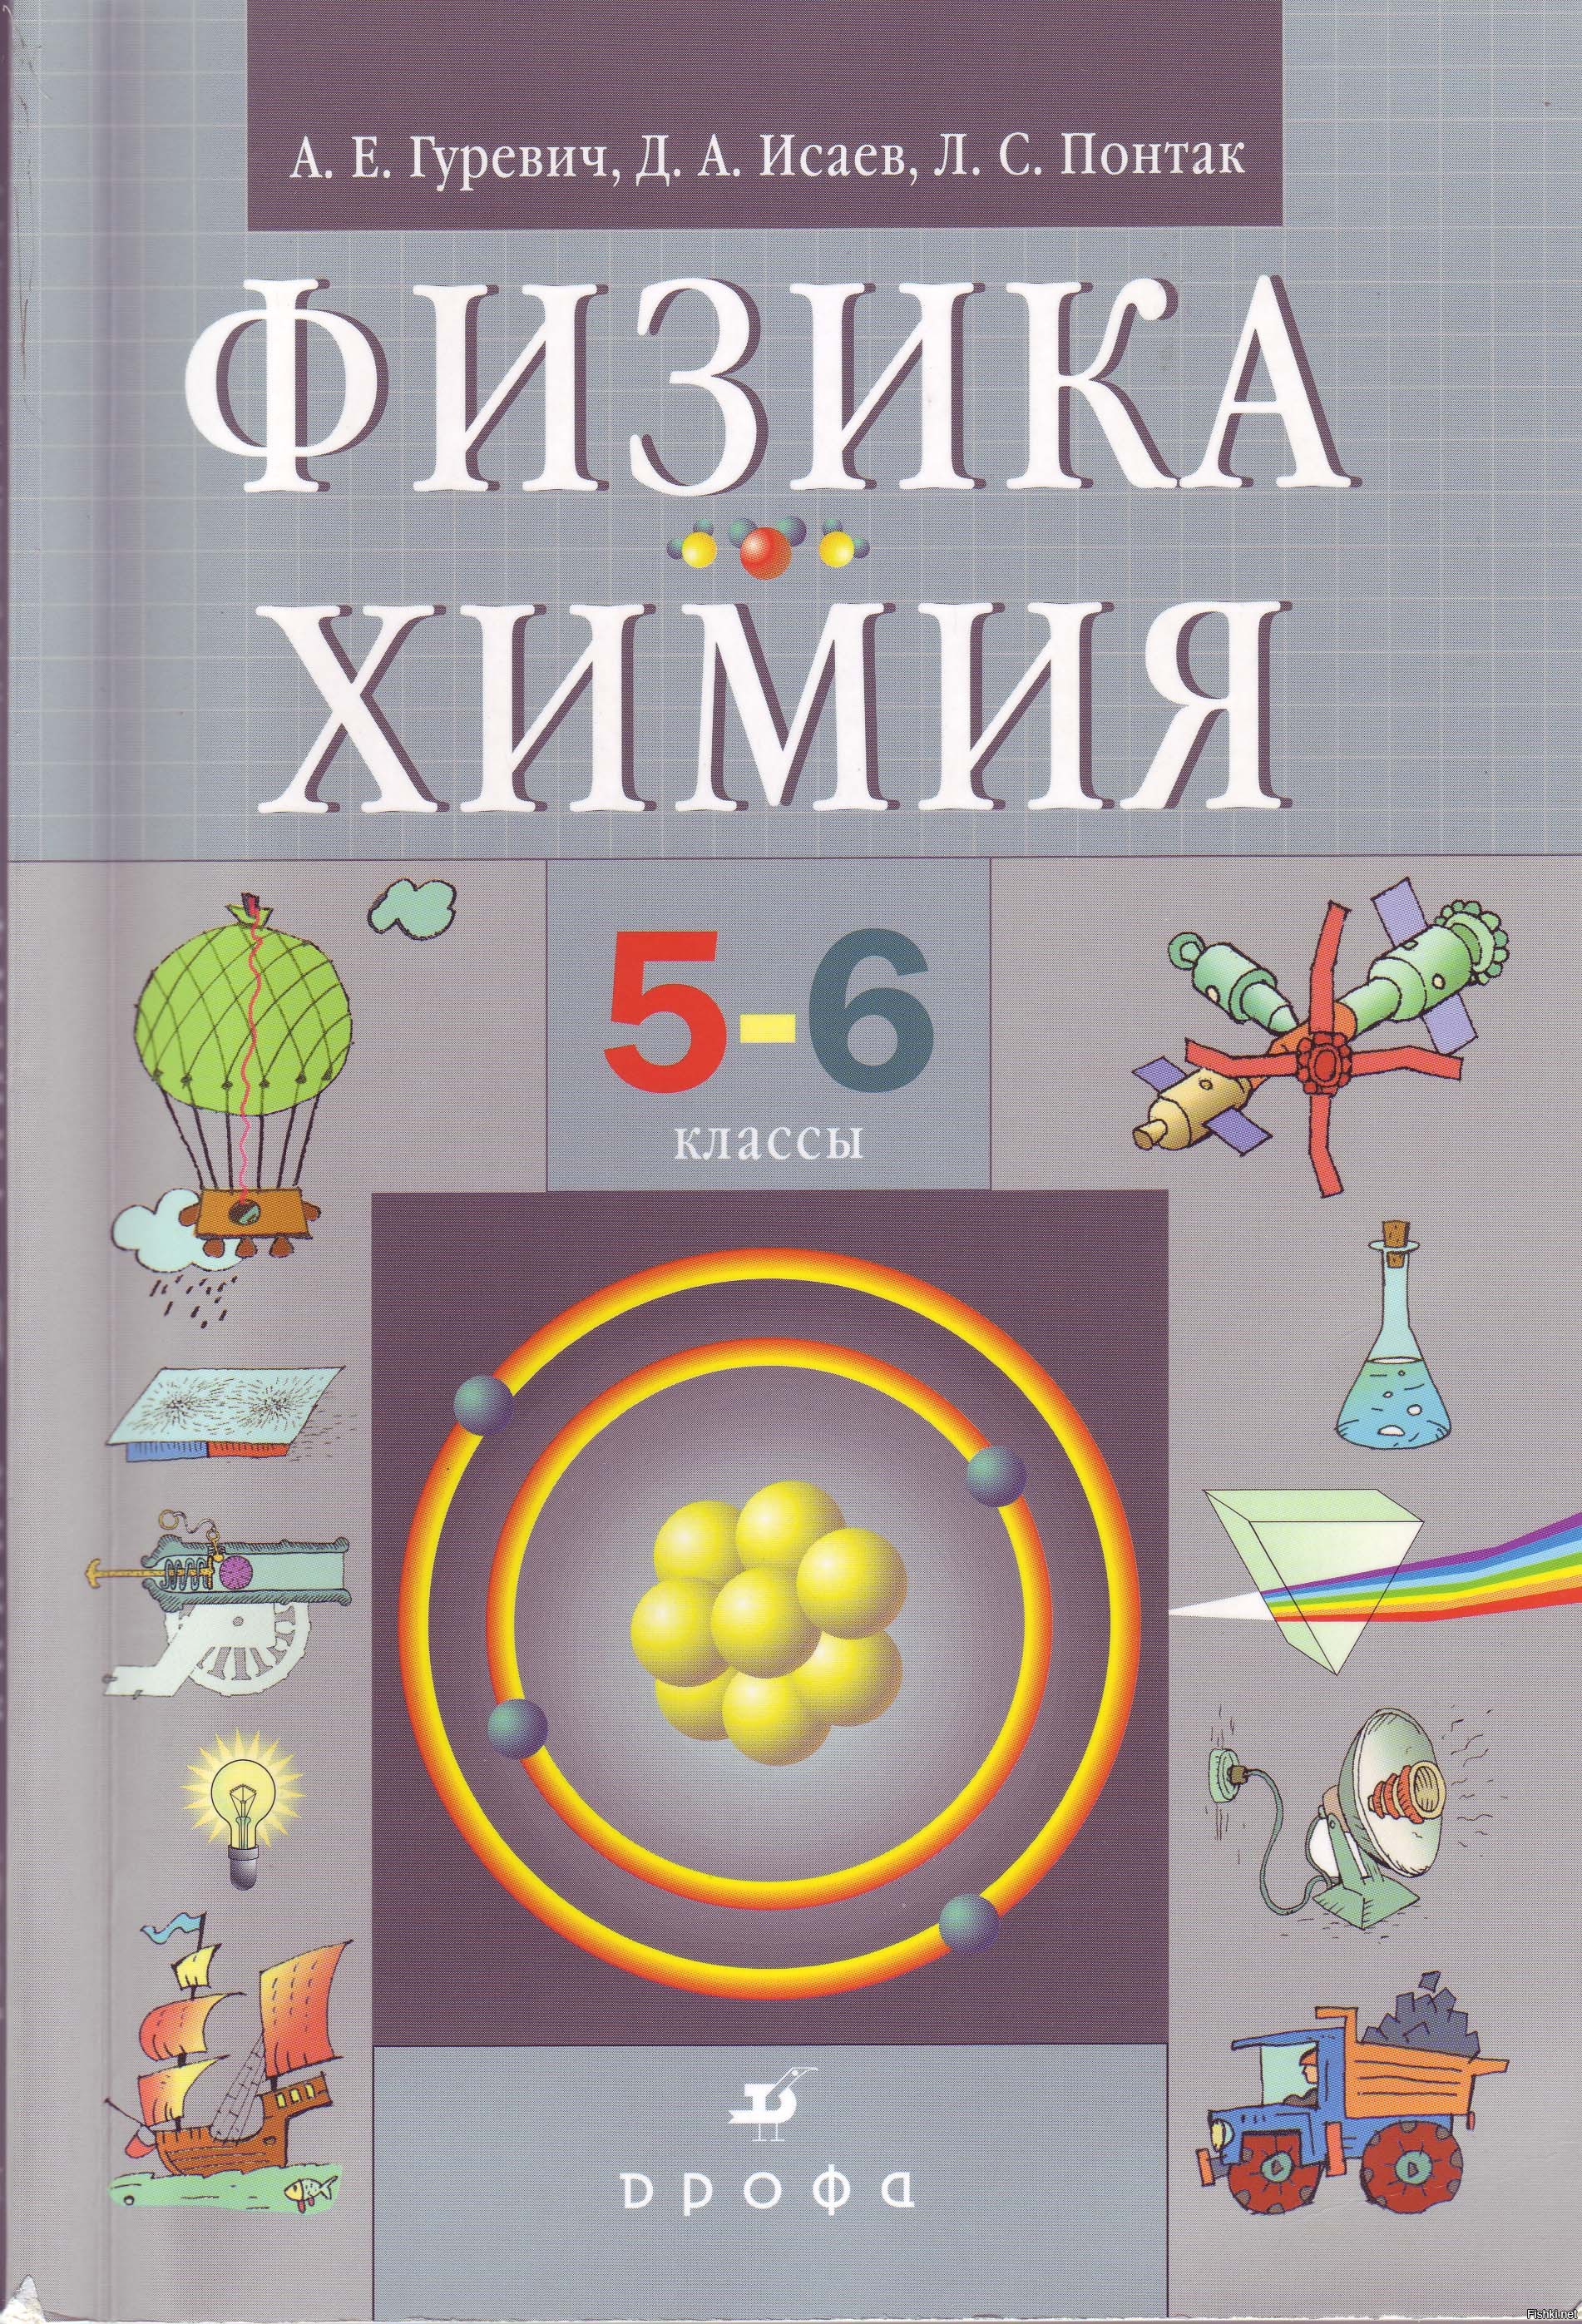 Физика химия 5 6 классы. Физика химия 5-6 класс. Химия учебник. Учебник по физике. Химия 6 класс учебник.